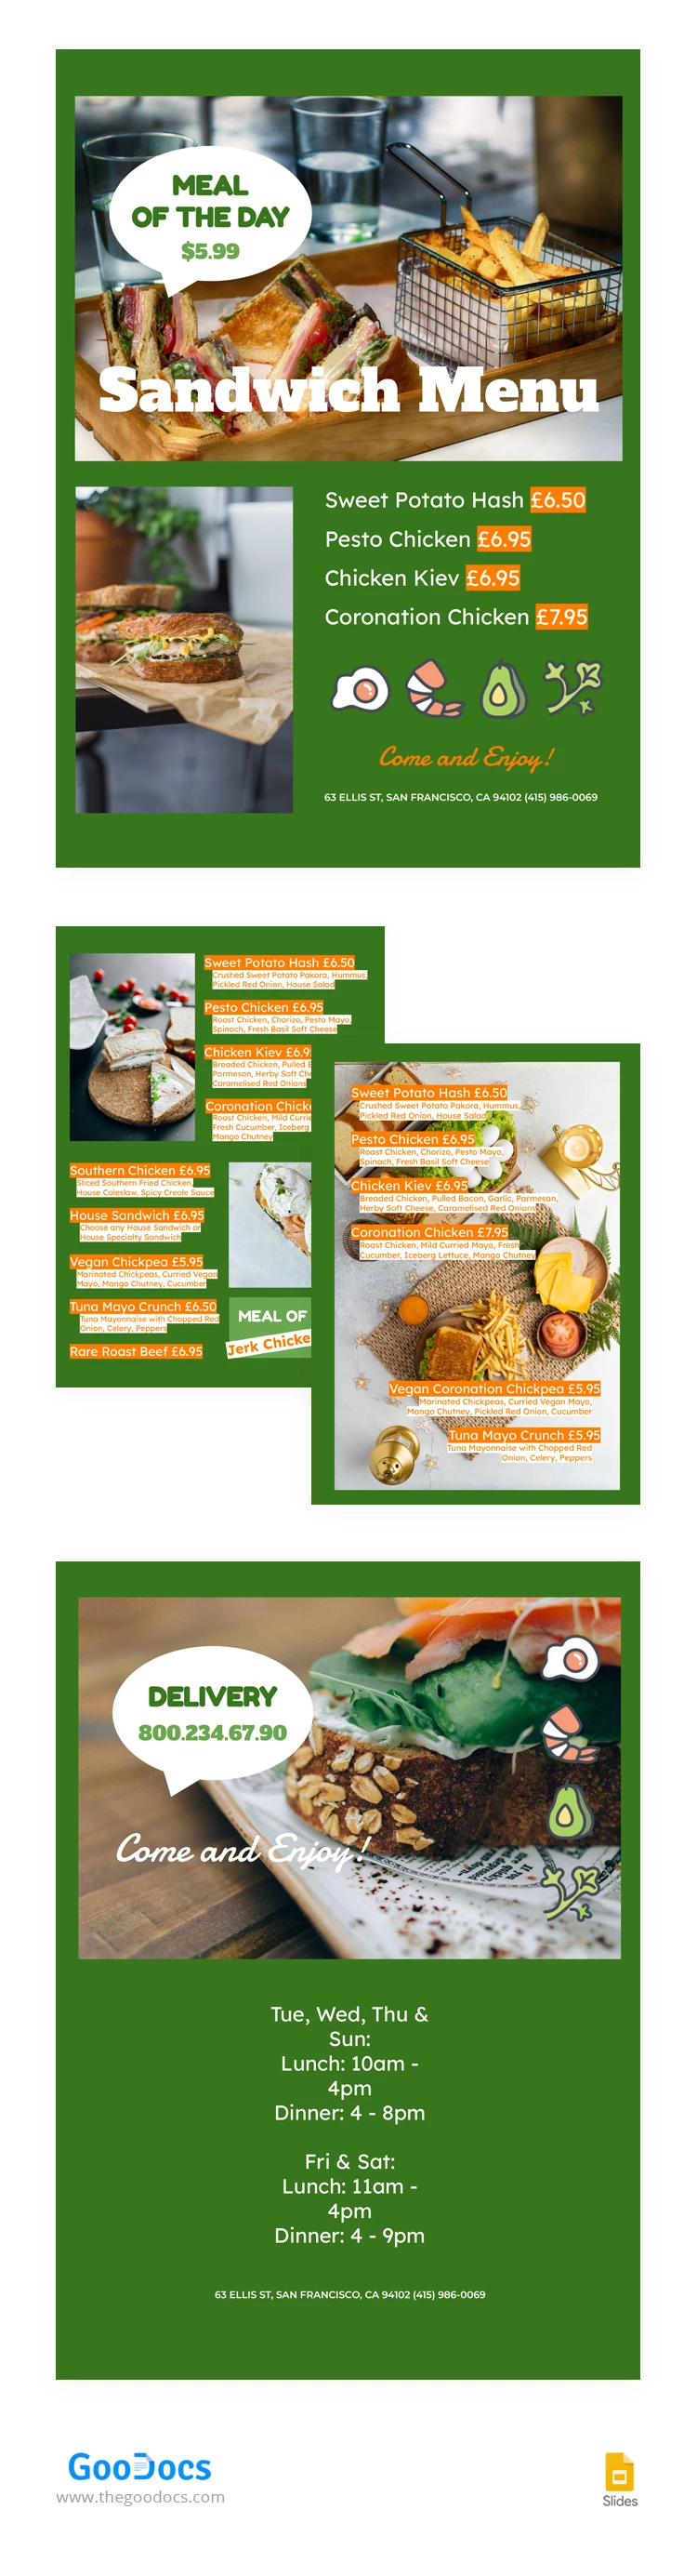 Sandwich Green Restaurant Menu - free Google Docs Template - 10067083